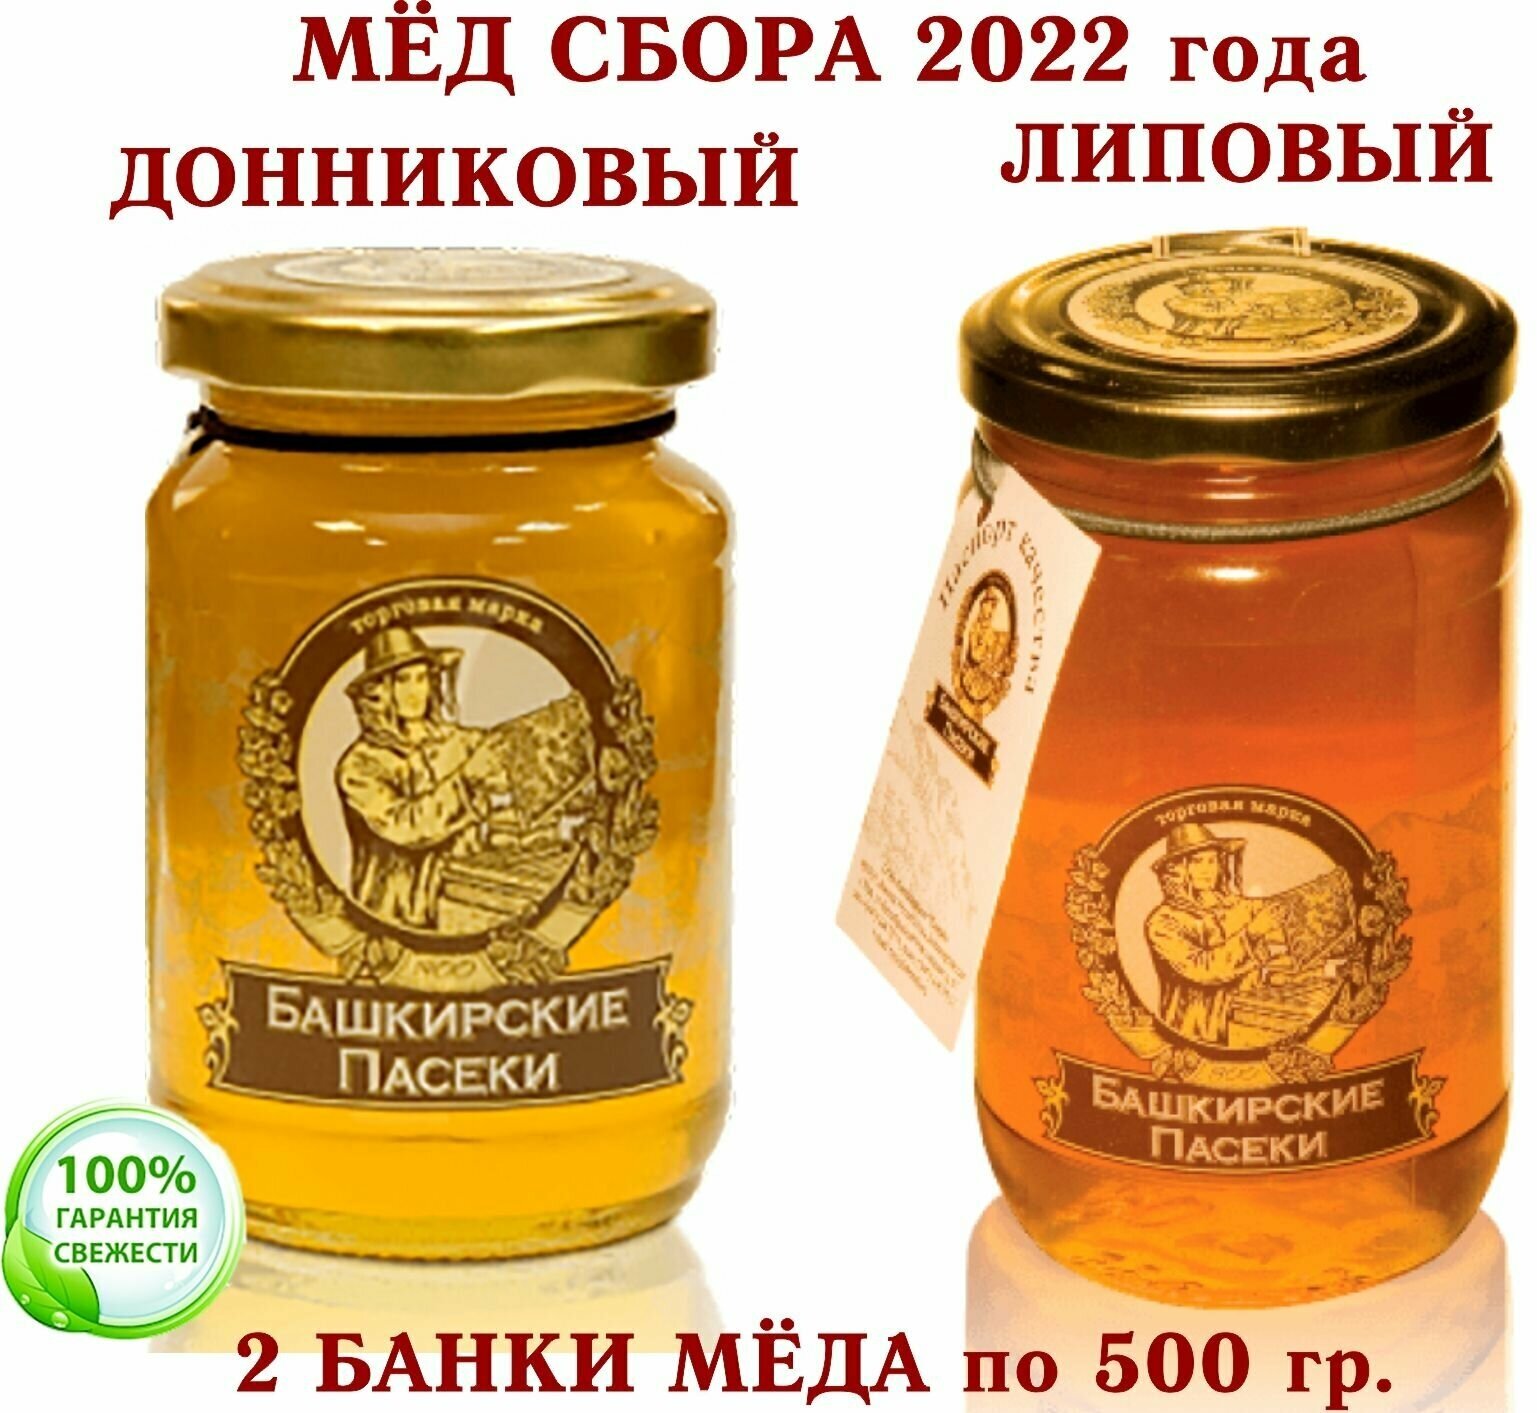 МЁД микс липовый+донниковый (Пасеки-500) "Башкирские Пасеки +" 2 * 500 гр.